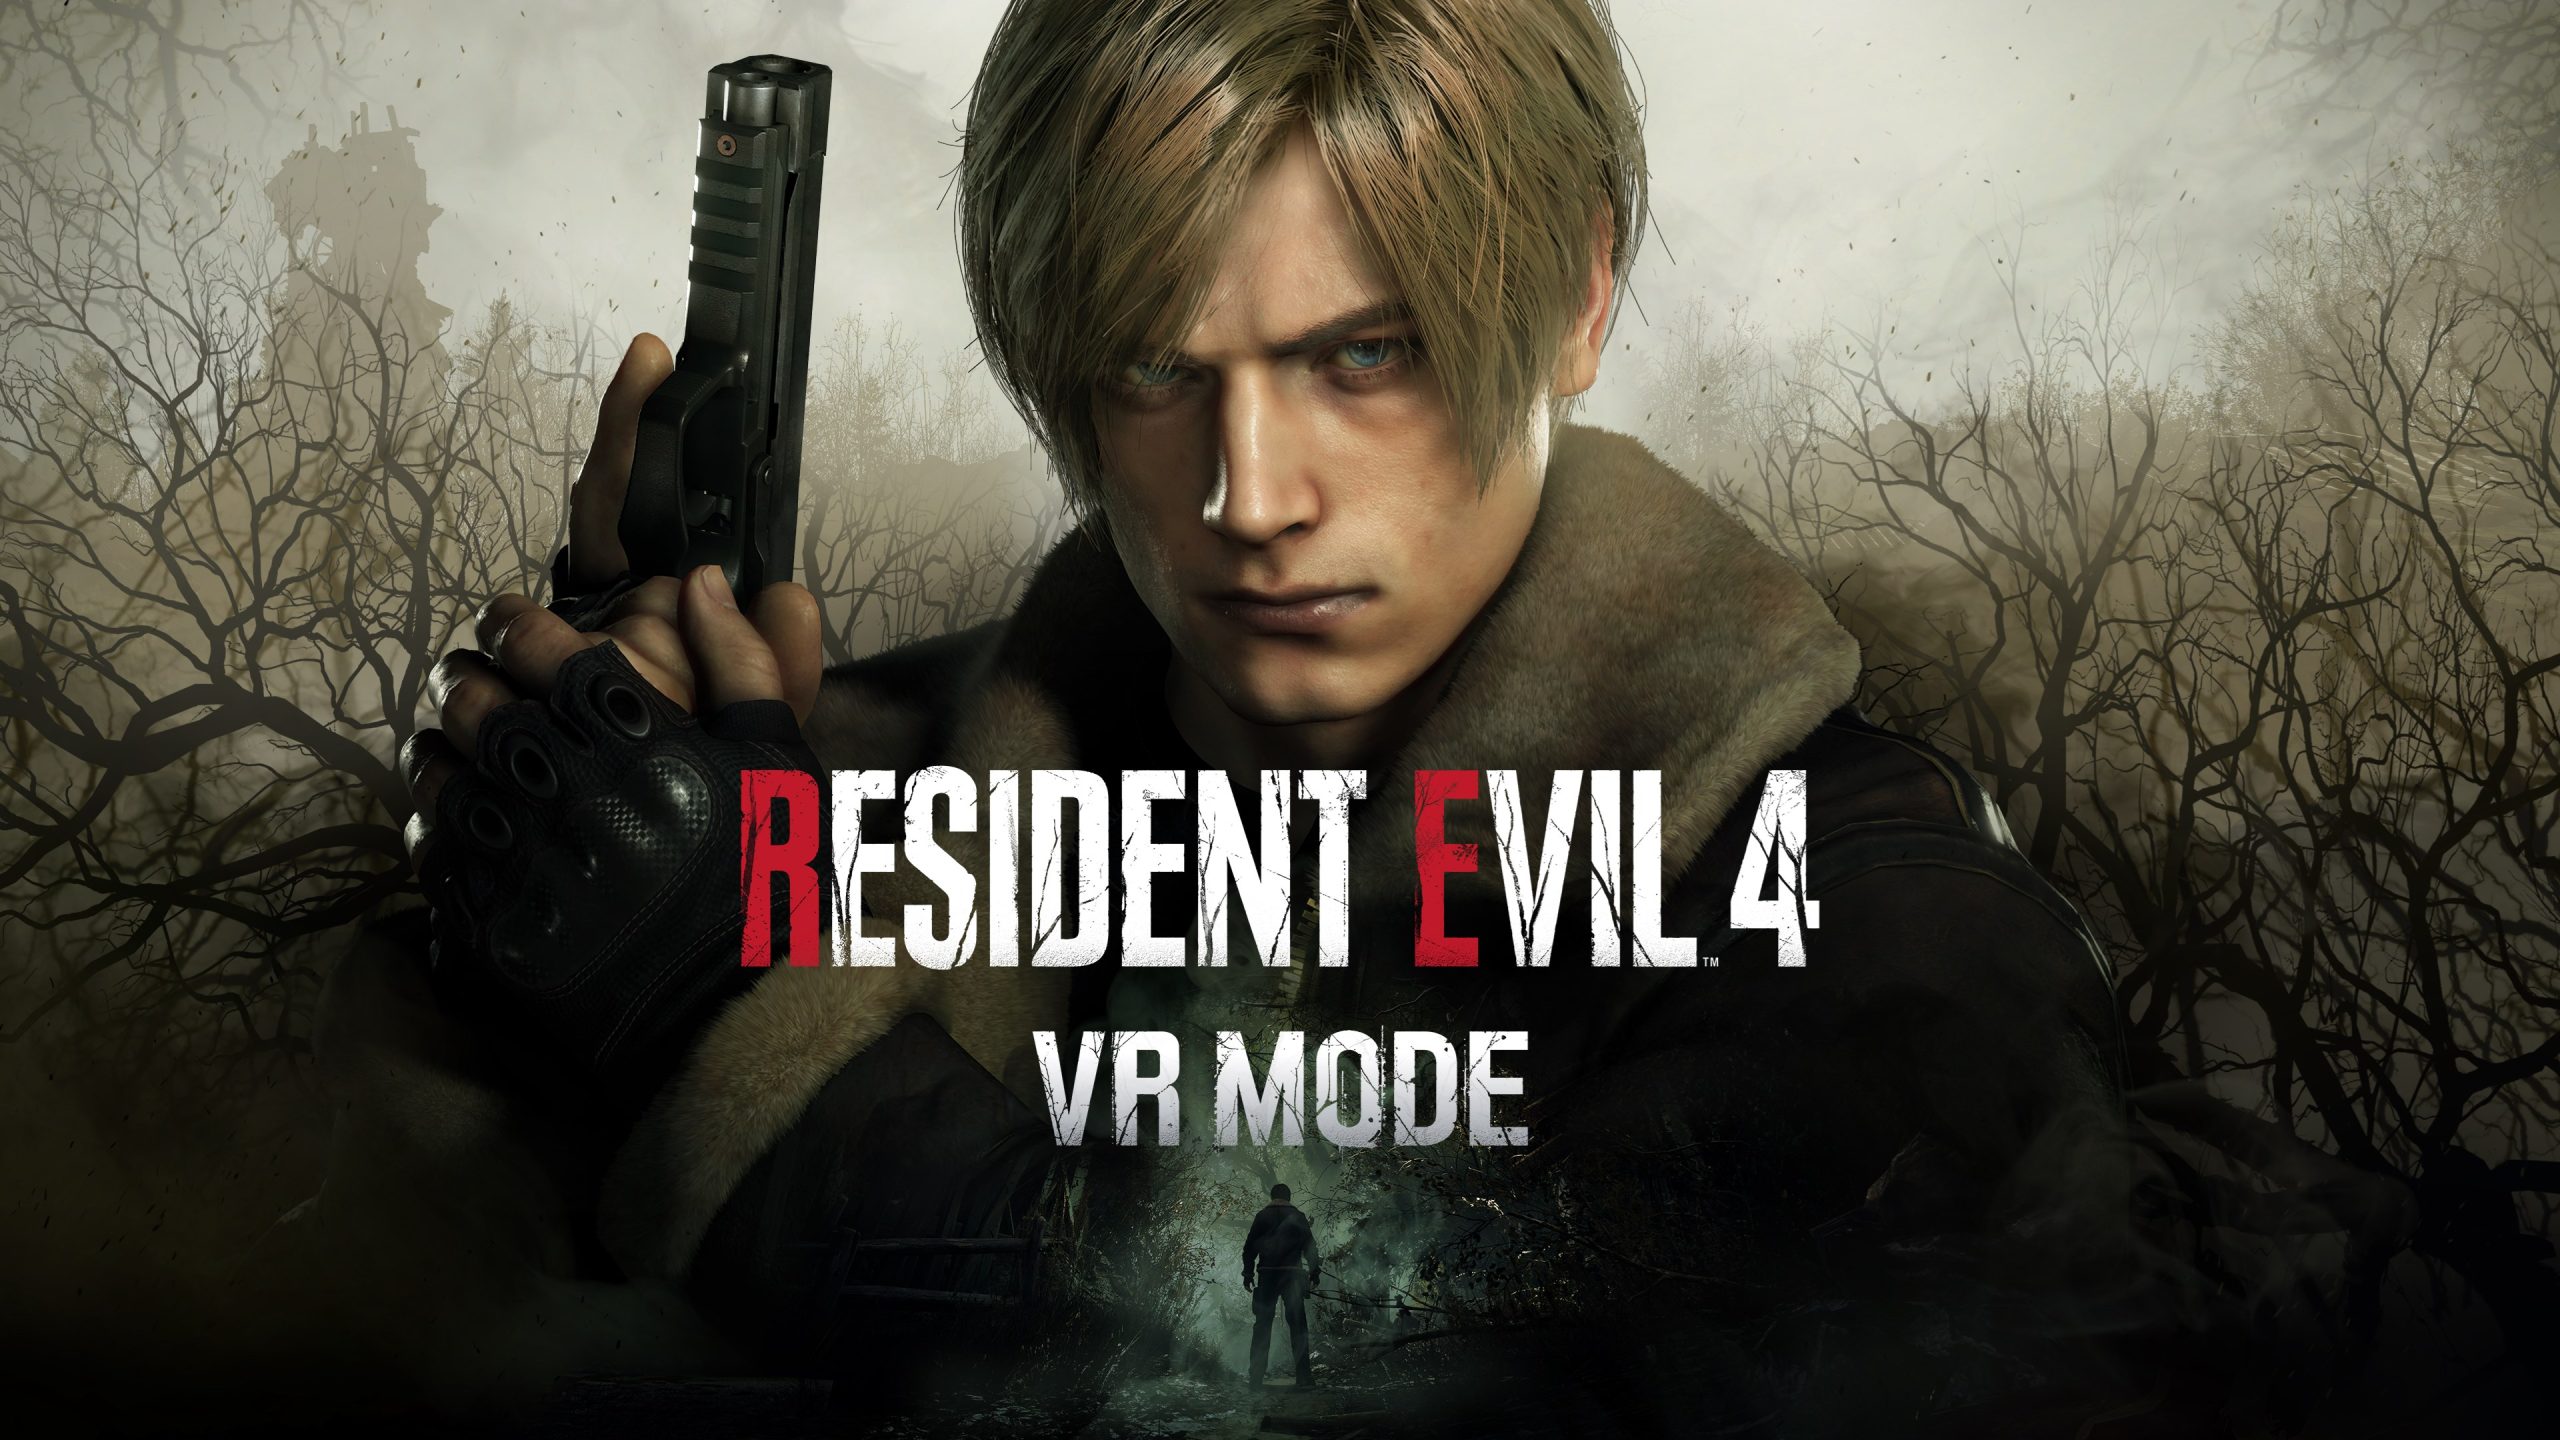 Separate Ways é anunciado para Resident Evil 4 remake, com direito a Ada  Wong e Wesker; DLC é pago - REVIL